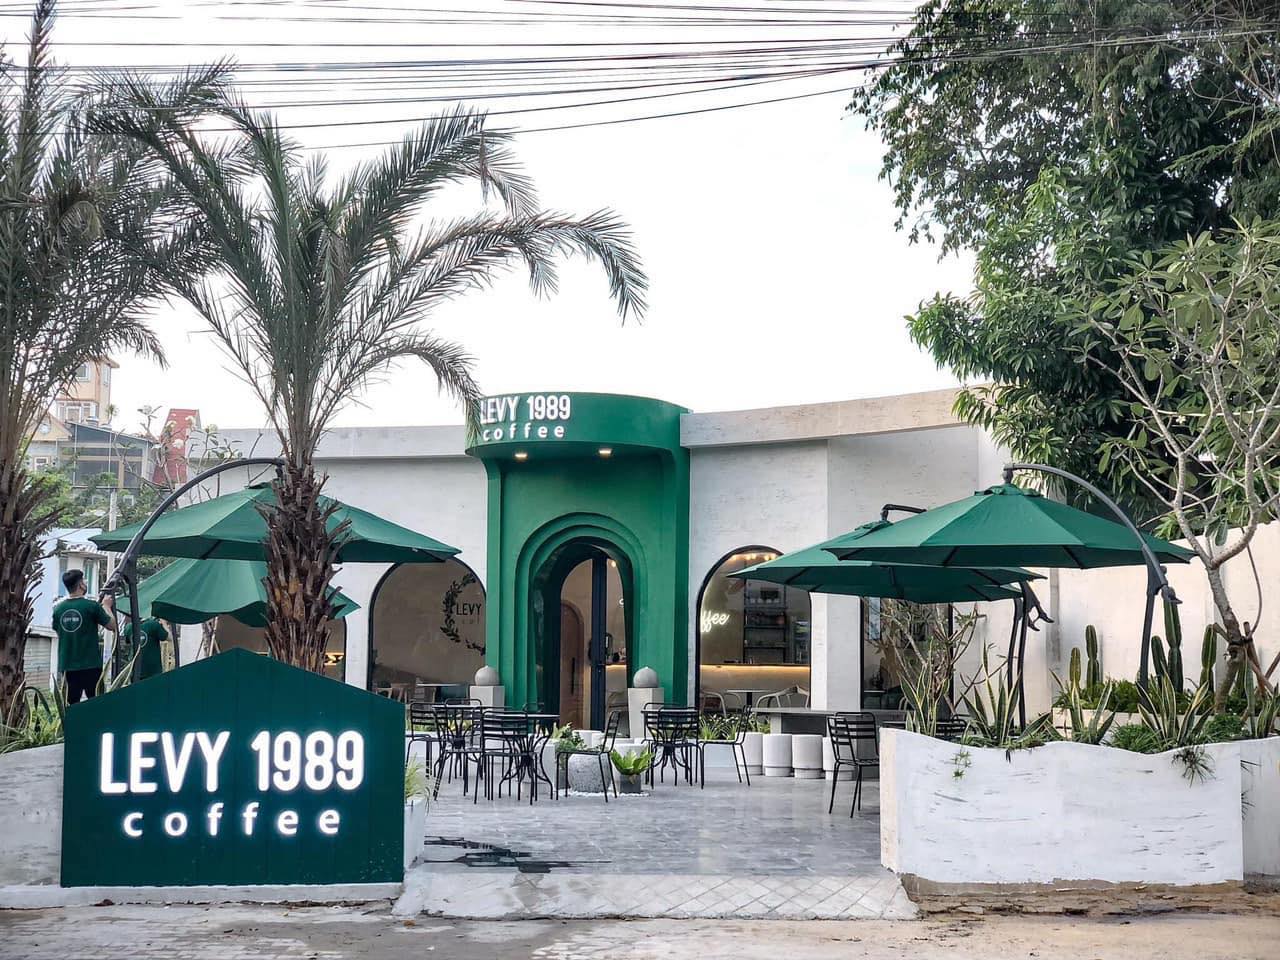 Dừng chân tại Levy 1989 Coffee tìm không gian thoáng đãng giữa lòng thành phố 4